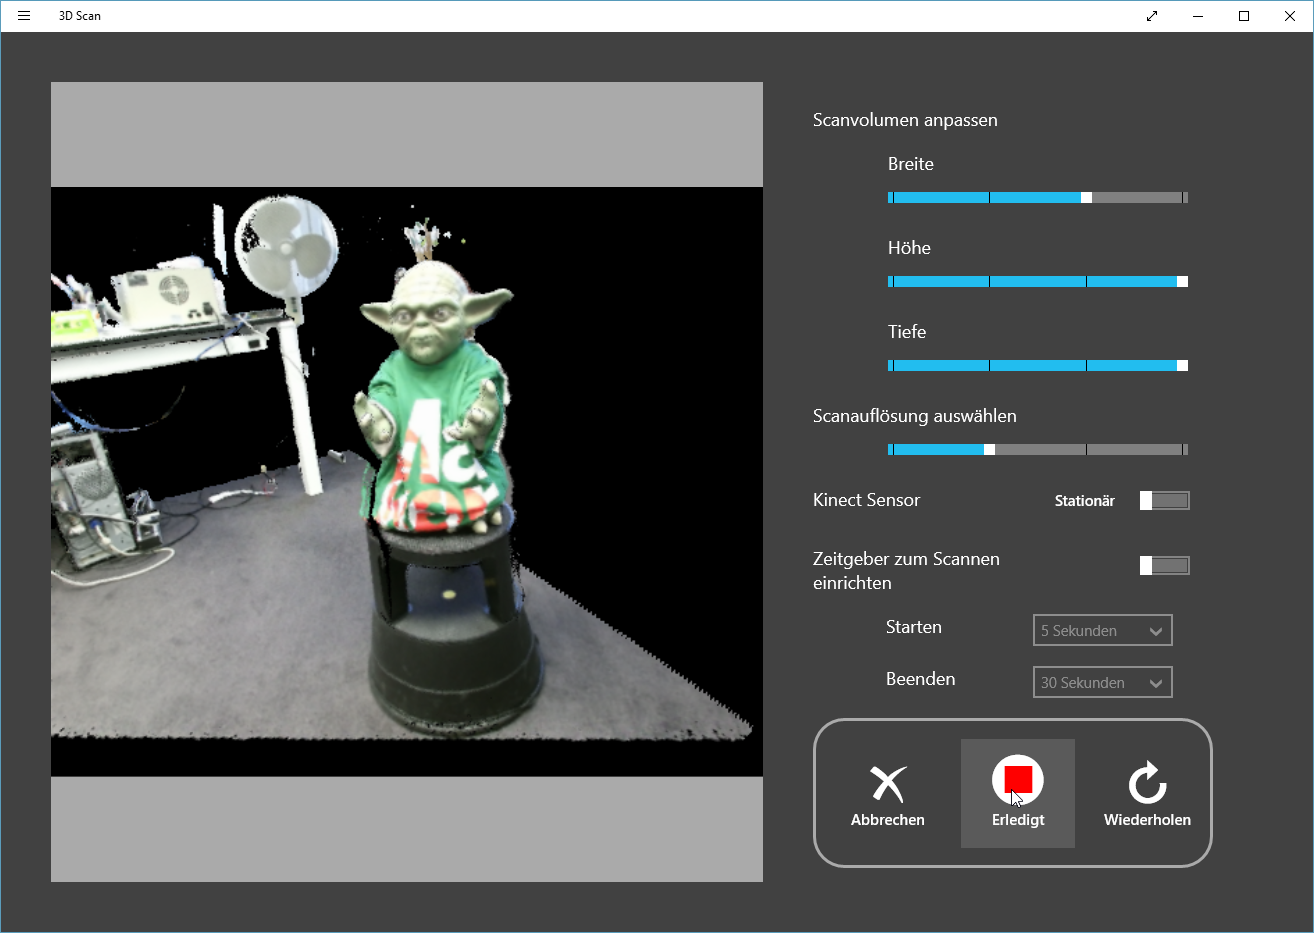 Gratis von Microsoft: 3D-Scan-App für Kinect 2 | heise online